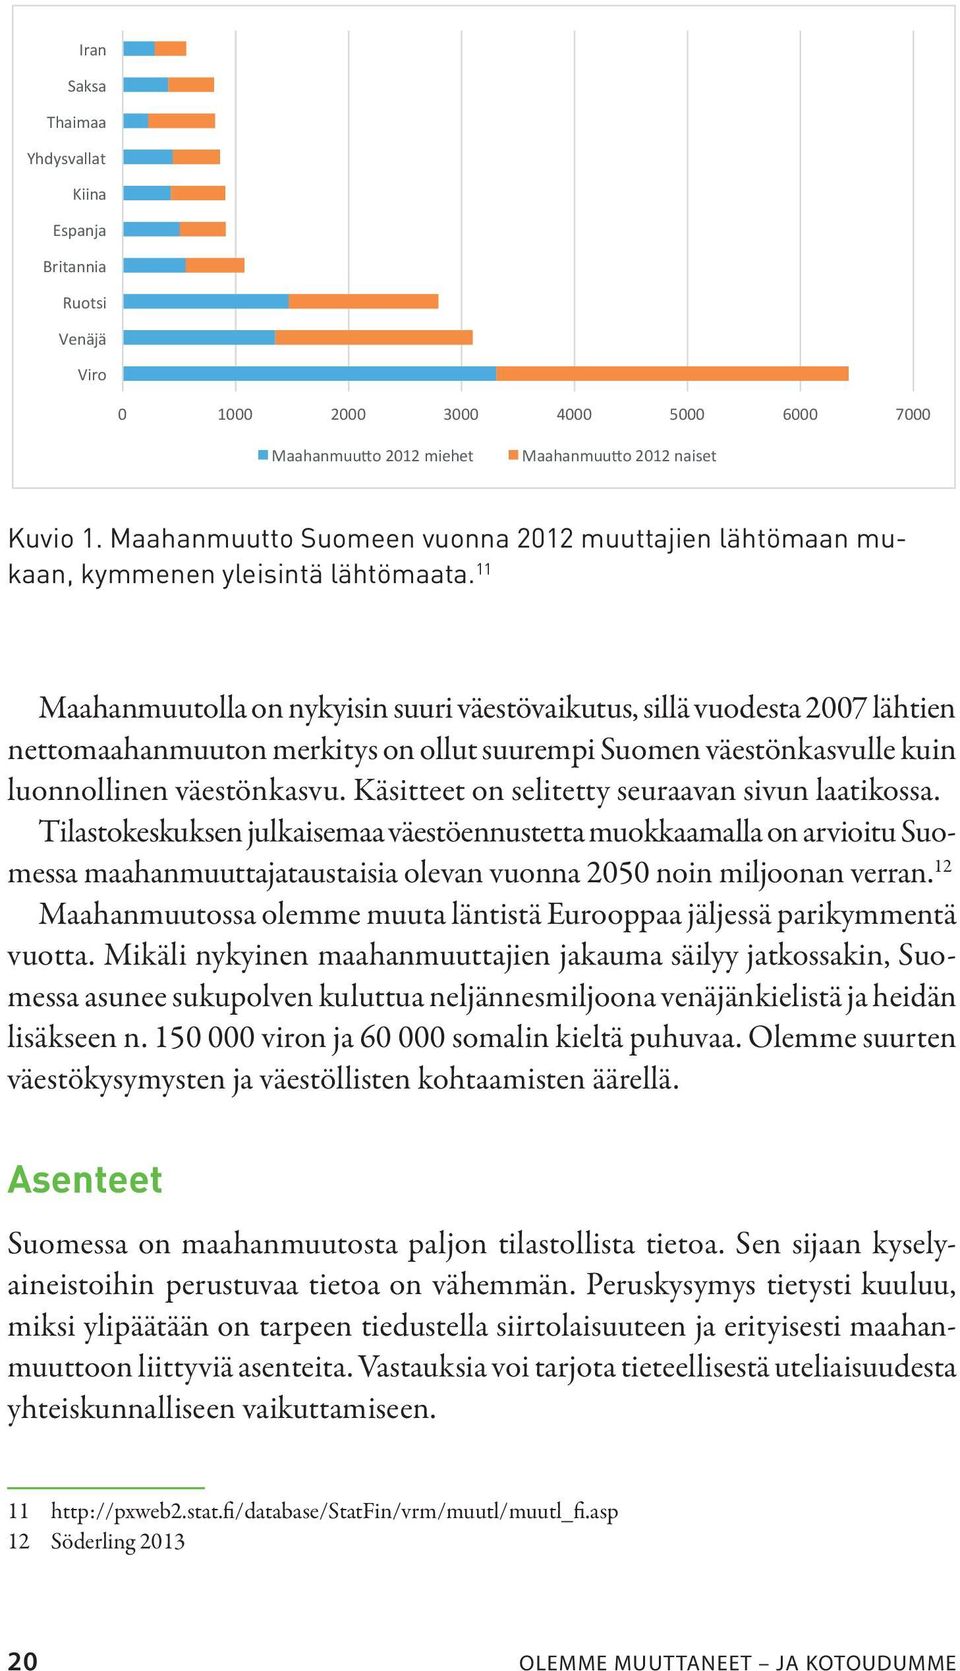 Maahanmuutto Suomeen vuonna 2012 muuttajien lähtömaan mukaan, kymmenen yleisintä lähtömaata.